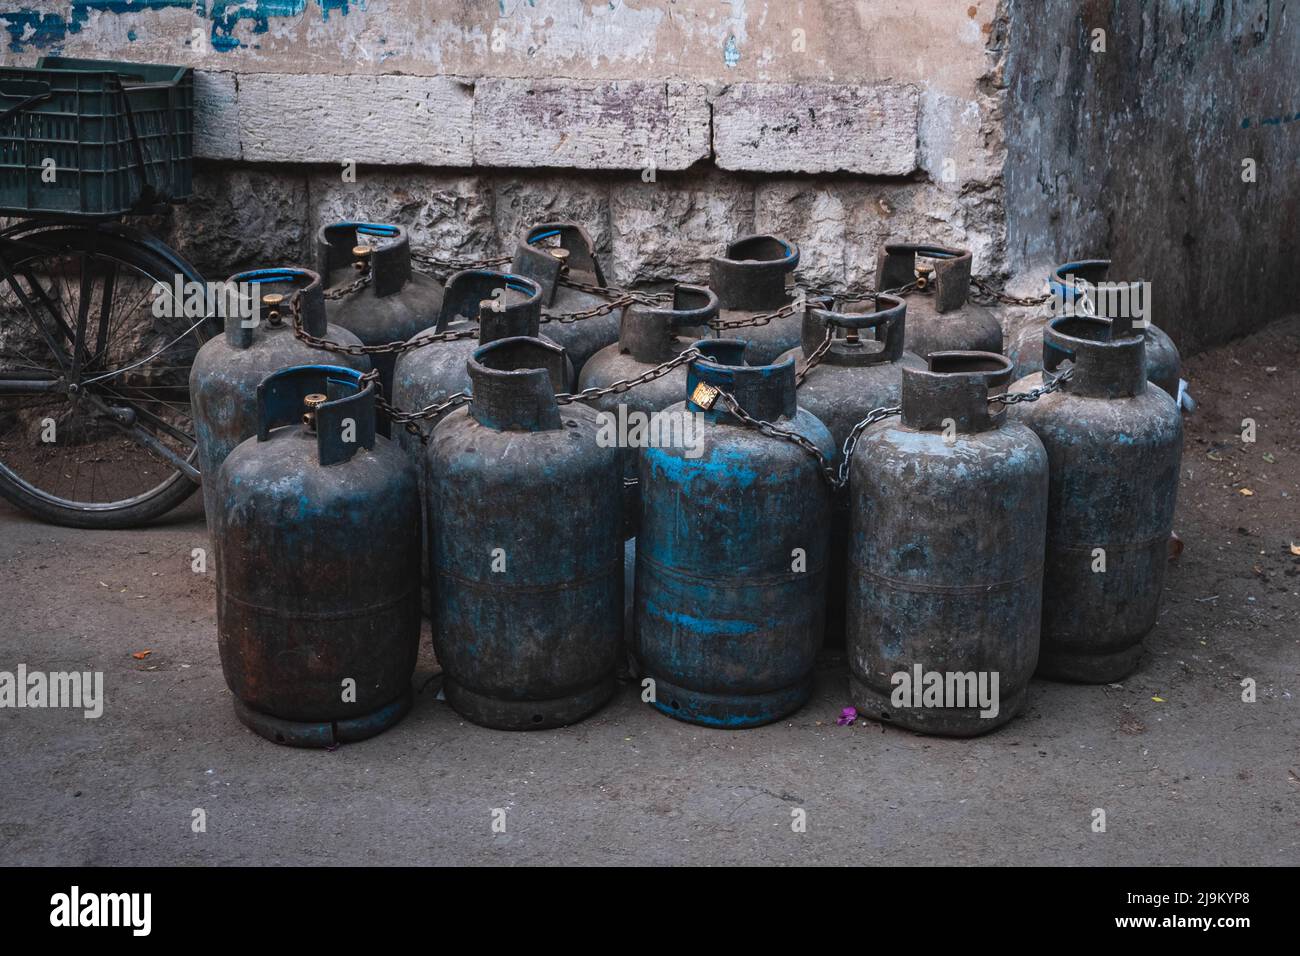 Many old, used propane gas bottles Stock Photo